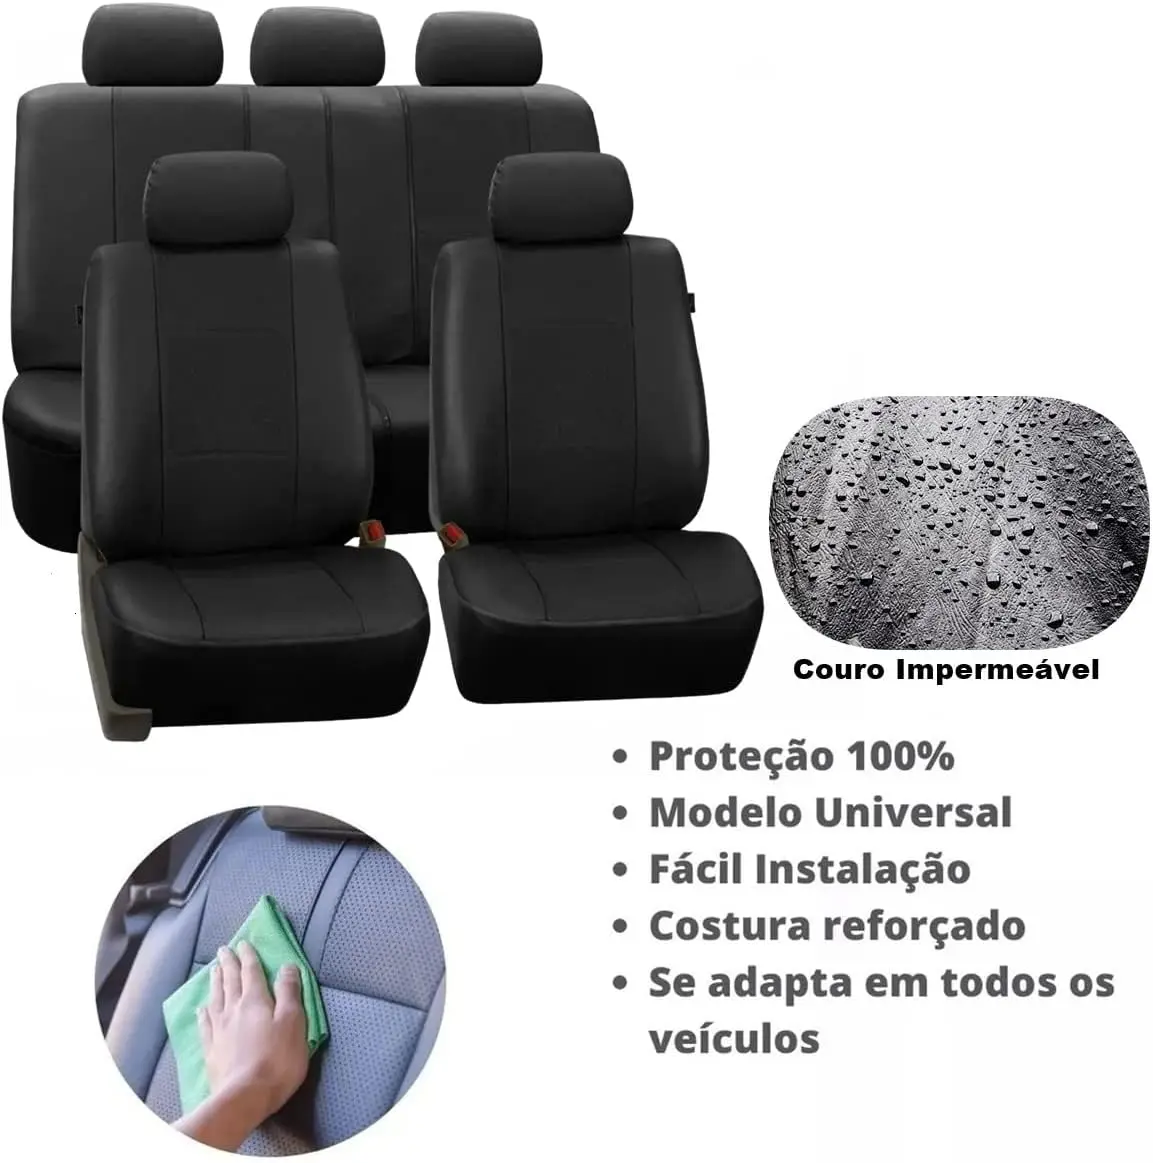 New For Jogo de Capa Banco Carro Universal em Couro Automotivo (Bege) Cars  Auto Car Accessories - AliExpress